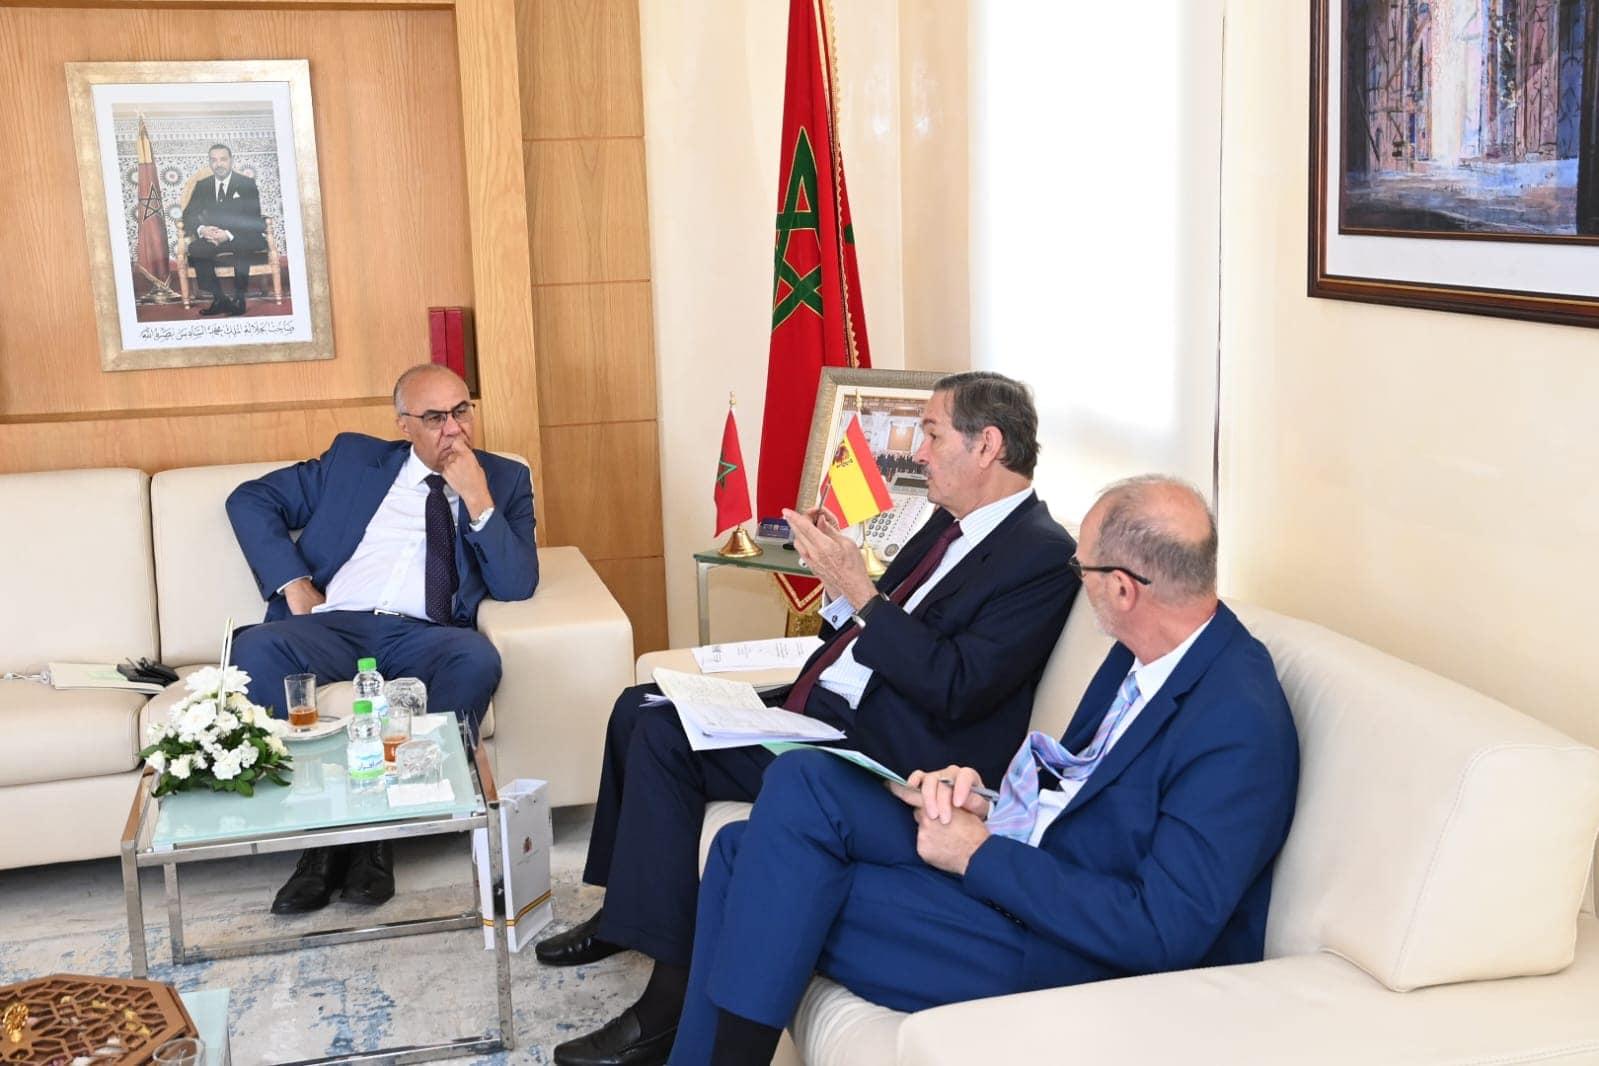 Le Ministre reçoit l’Ambassadeur d’Espagne au Maroc